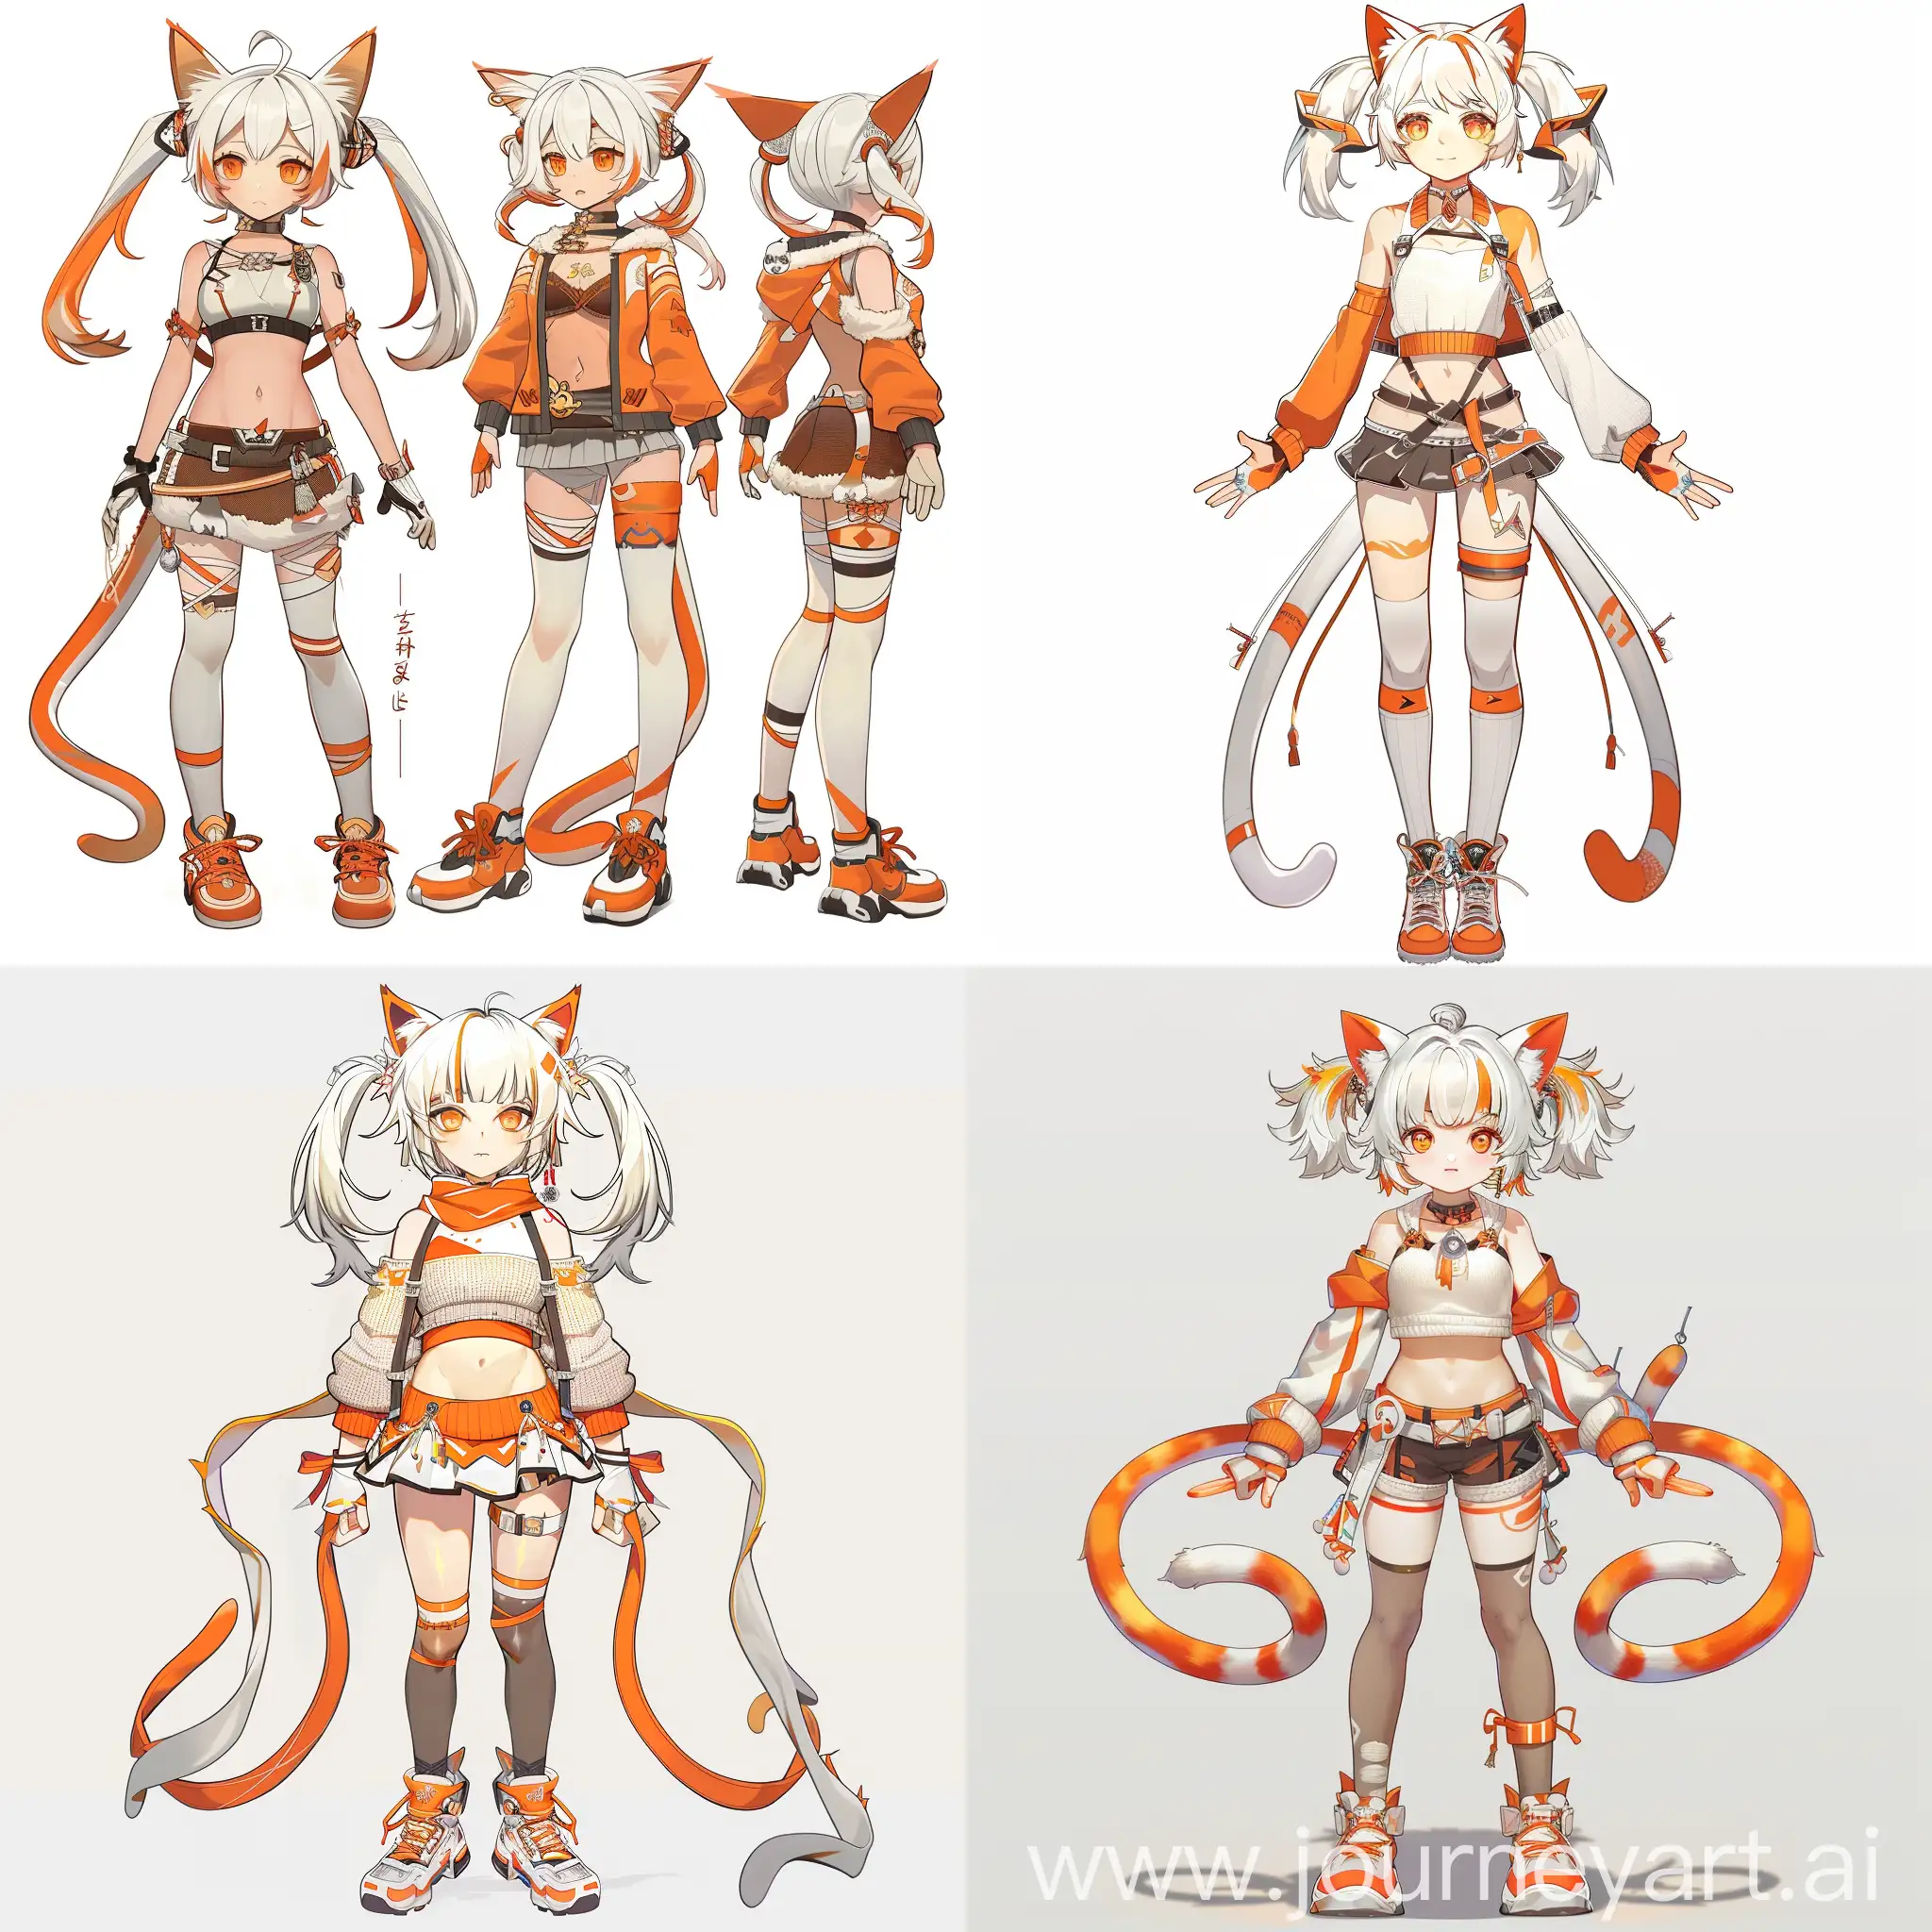 девушка из игры геншин импакт, с ушами кошки, двумя хвостами, с белыми и оранжевыми волосами, челкой,  в топе и кофте, с ремешками, в юбке, в носках разной длинны и оранжевых кедах